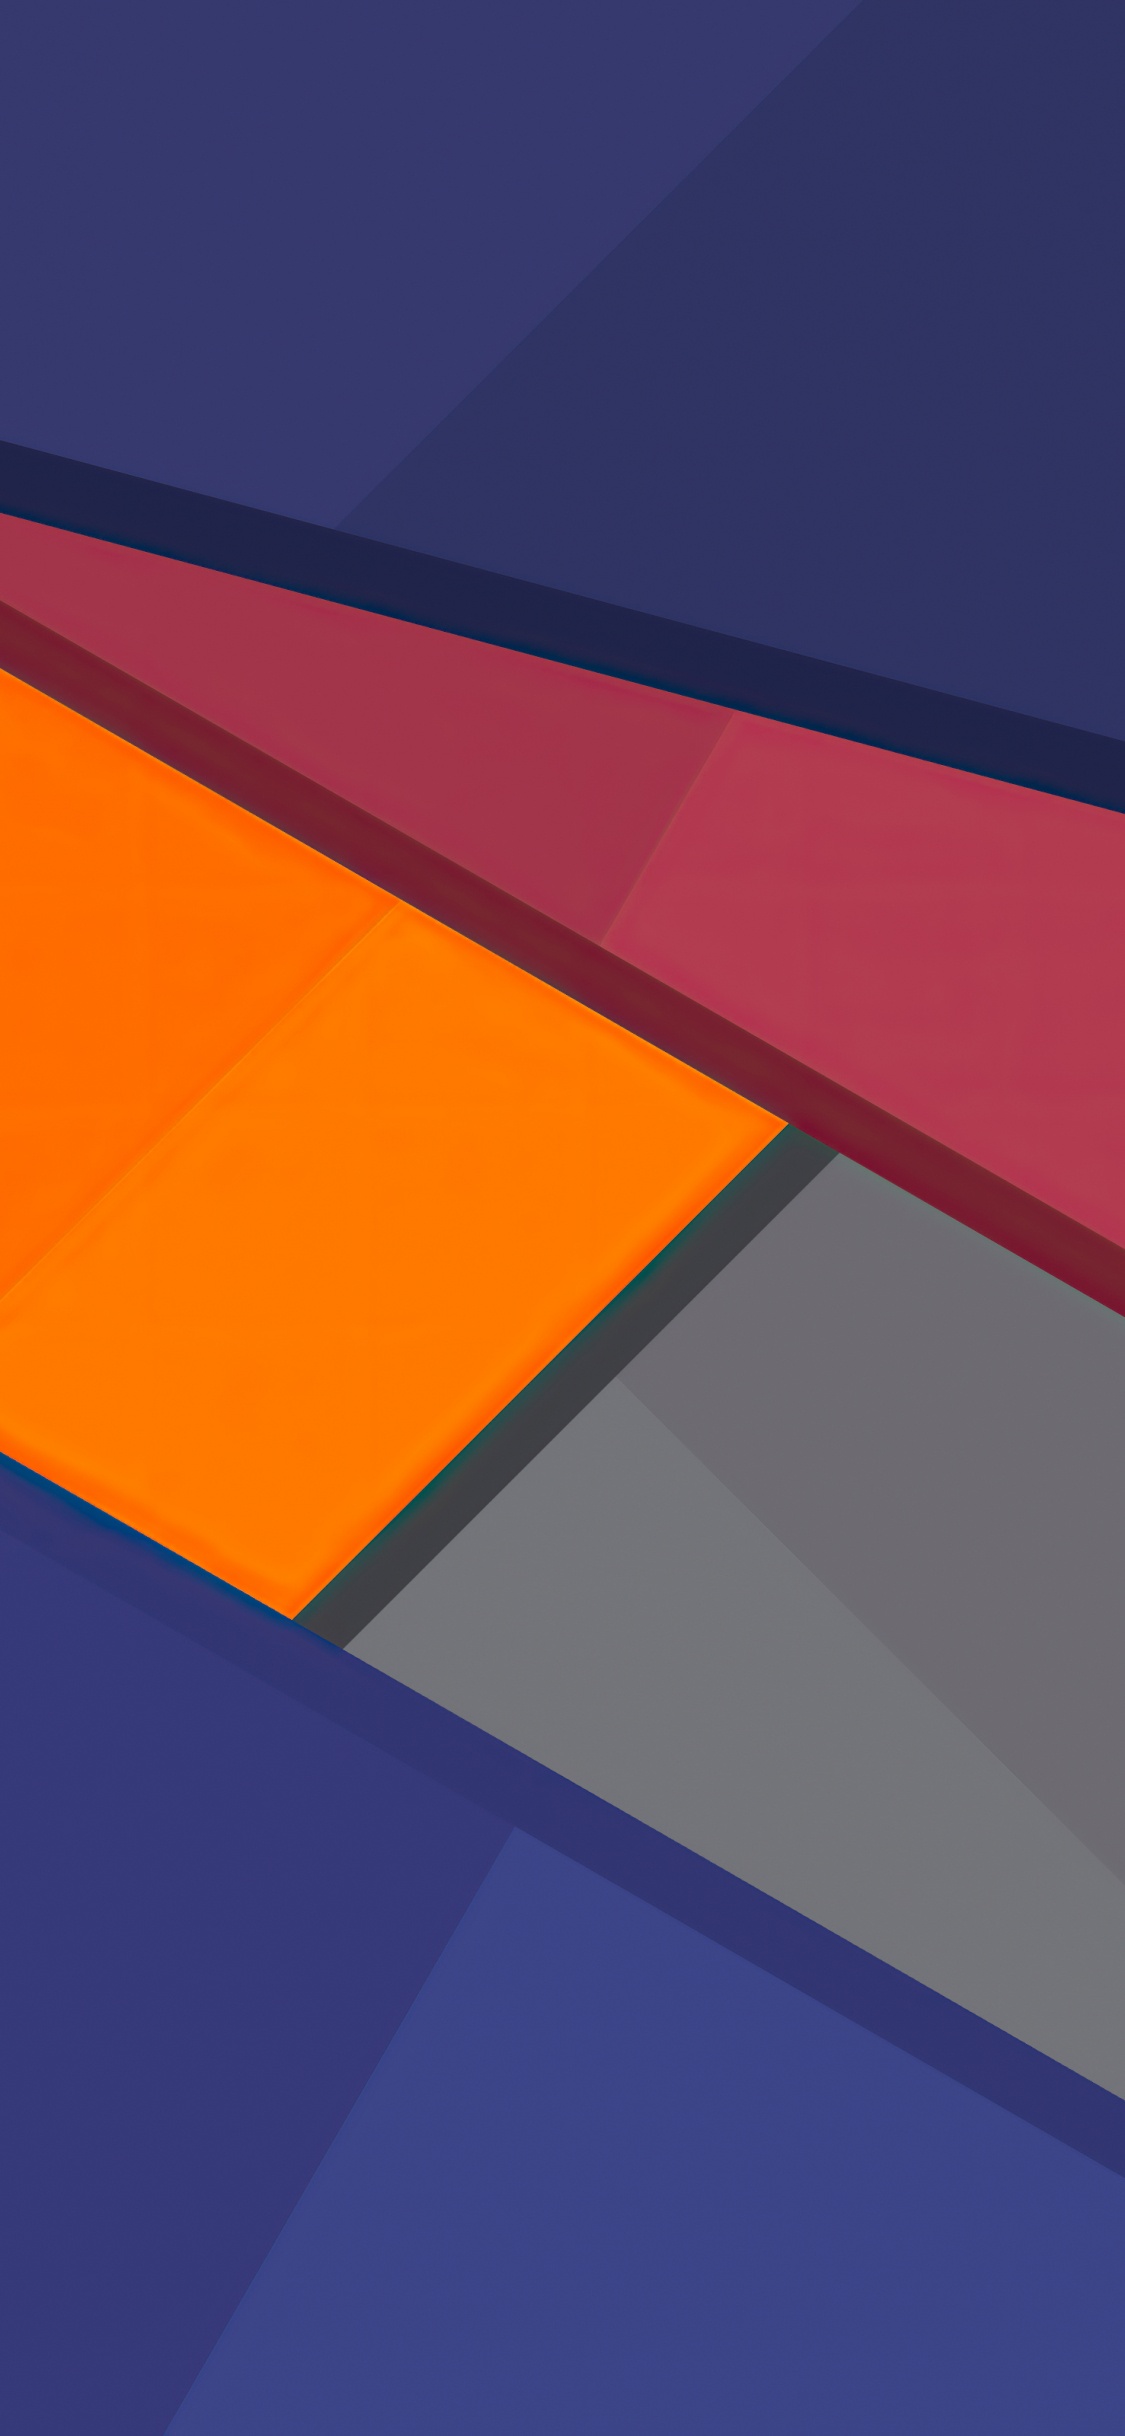 橙色, 华为P20 Pro, 色彩, Azure, 矩形 壁纸 1125x2436 允许